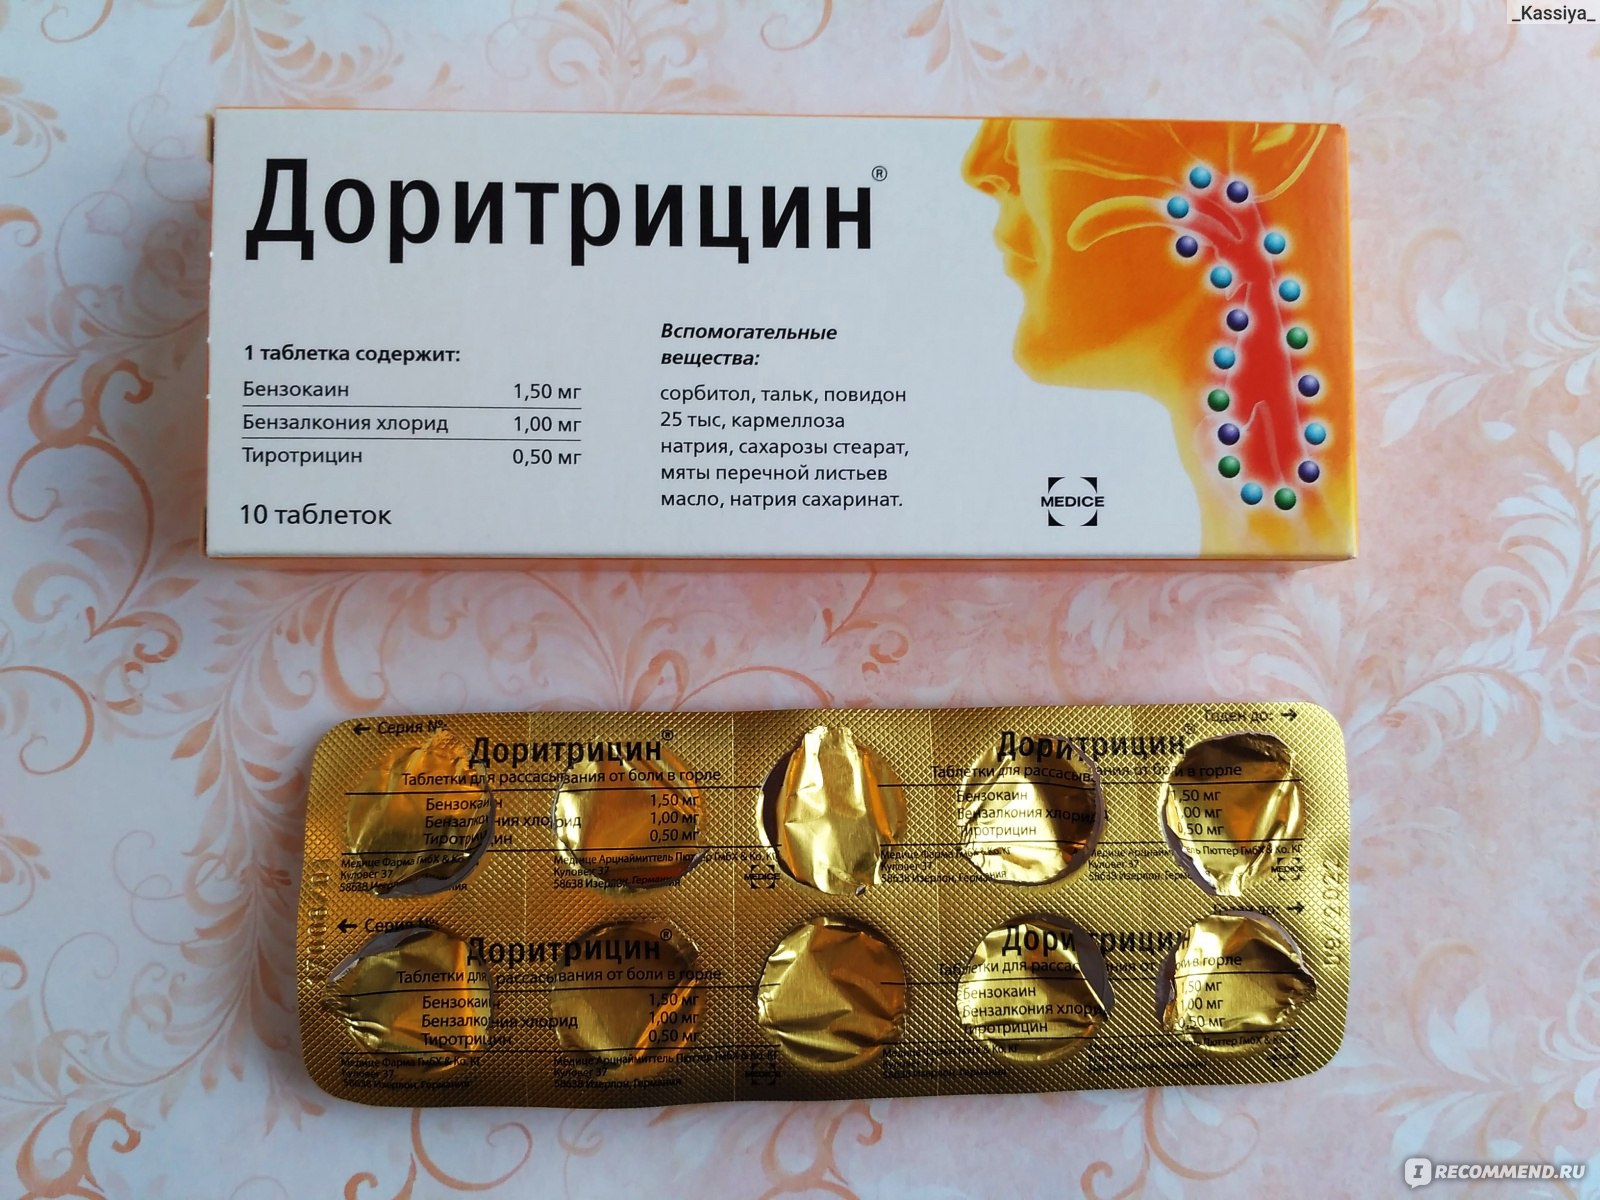 Таблетки от боли в горле Доритрицин - «Доритрицин в сравнении с .